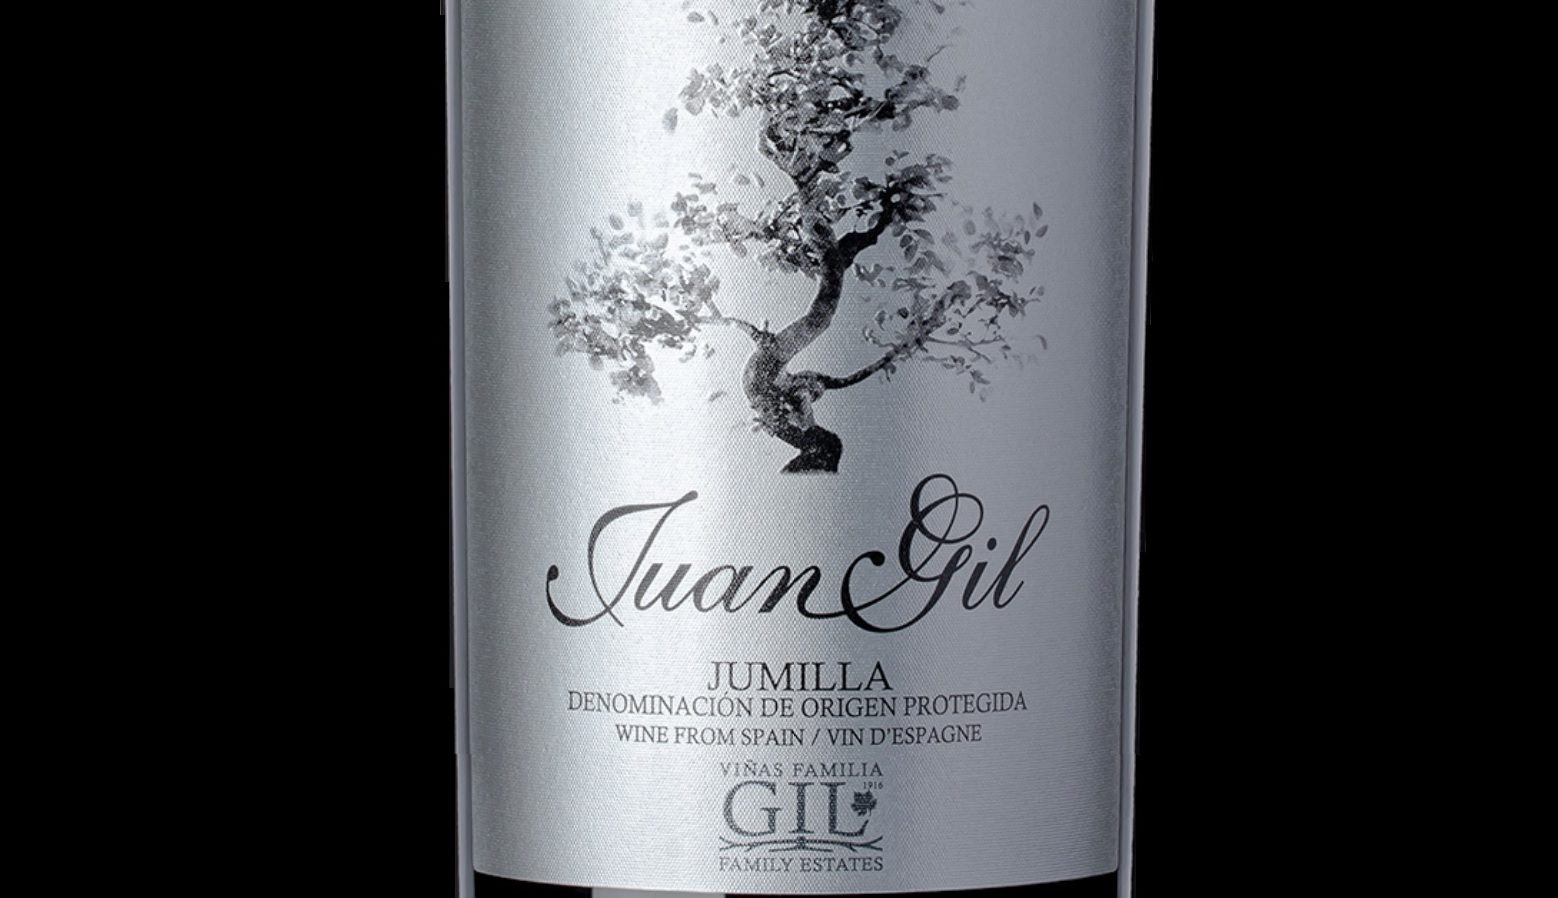 El vino Juan Gil Etiqueta Plata 2018 es “un sorbo de lujo a precios ajustados”